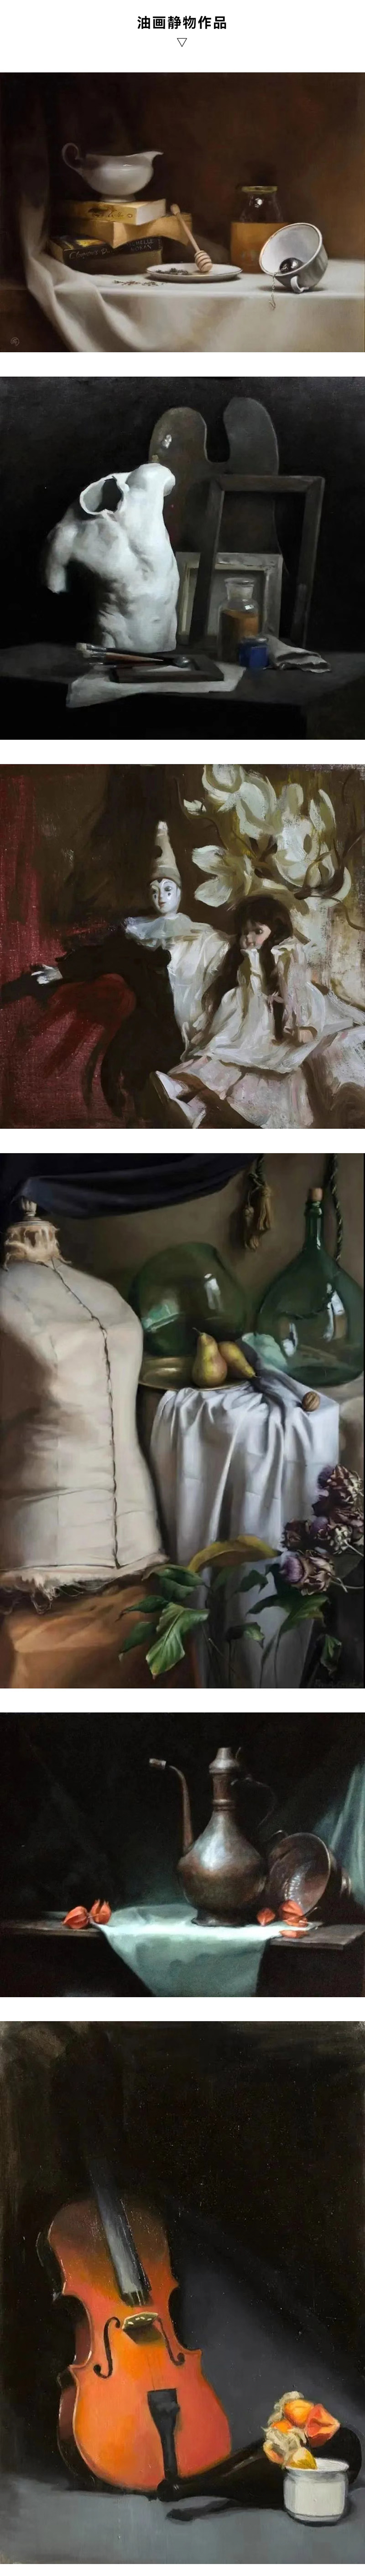 佛罗伦萨国立美术学院油画静物作品